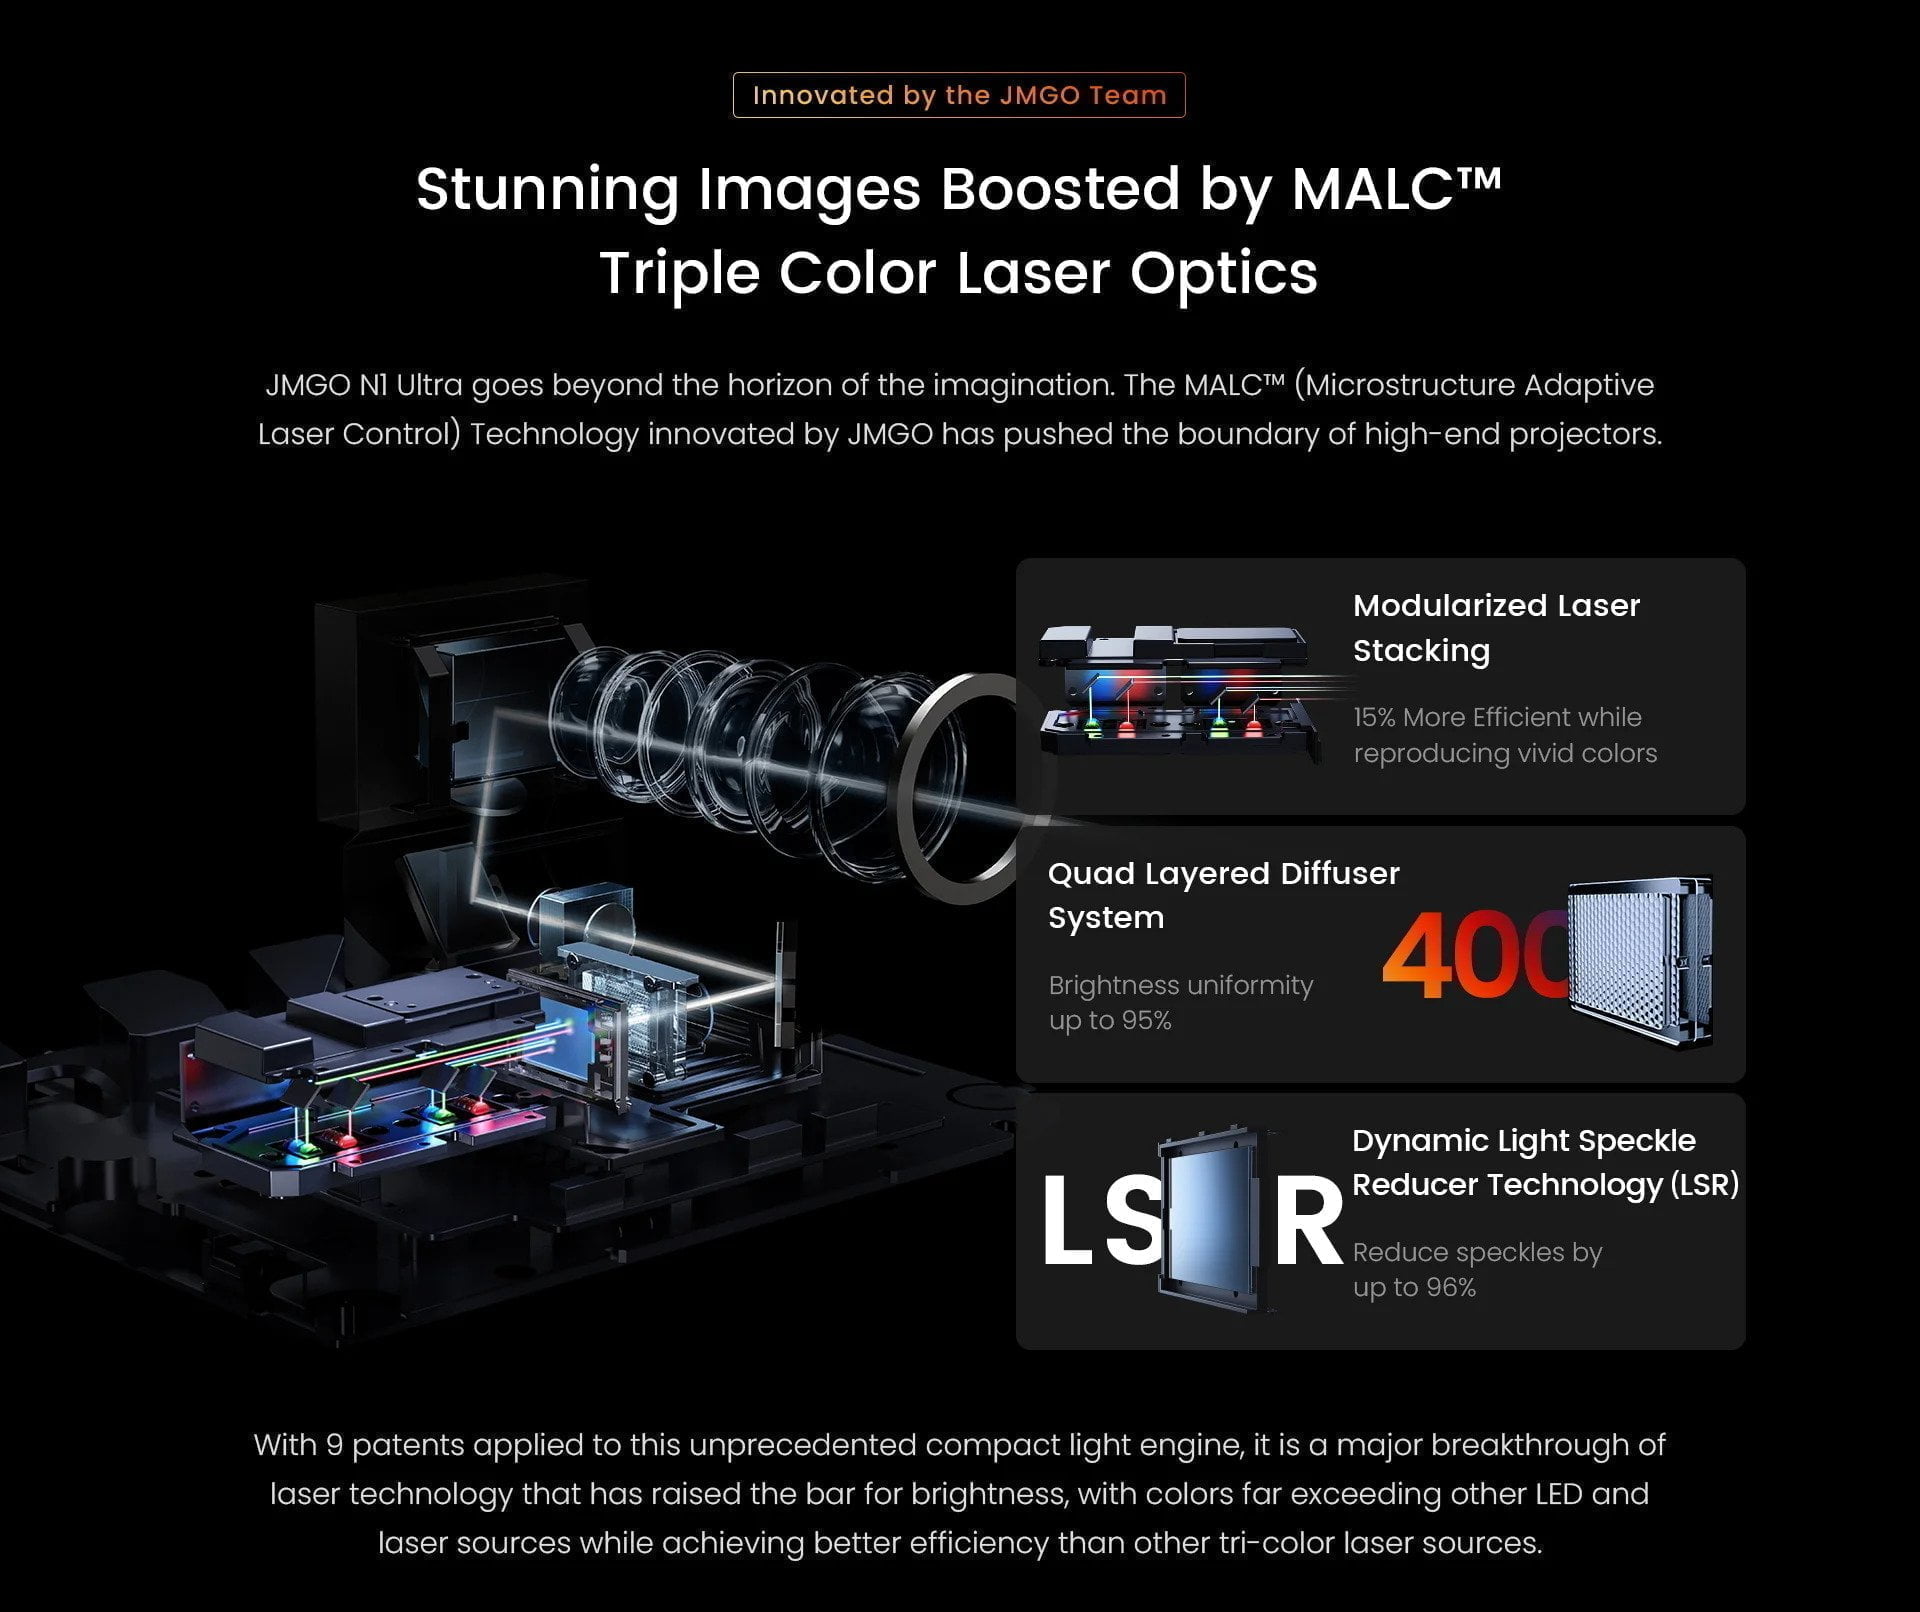 JMGO N1 Ultra 4K Triple Color Laser Gimbal Projector